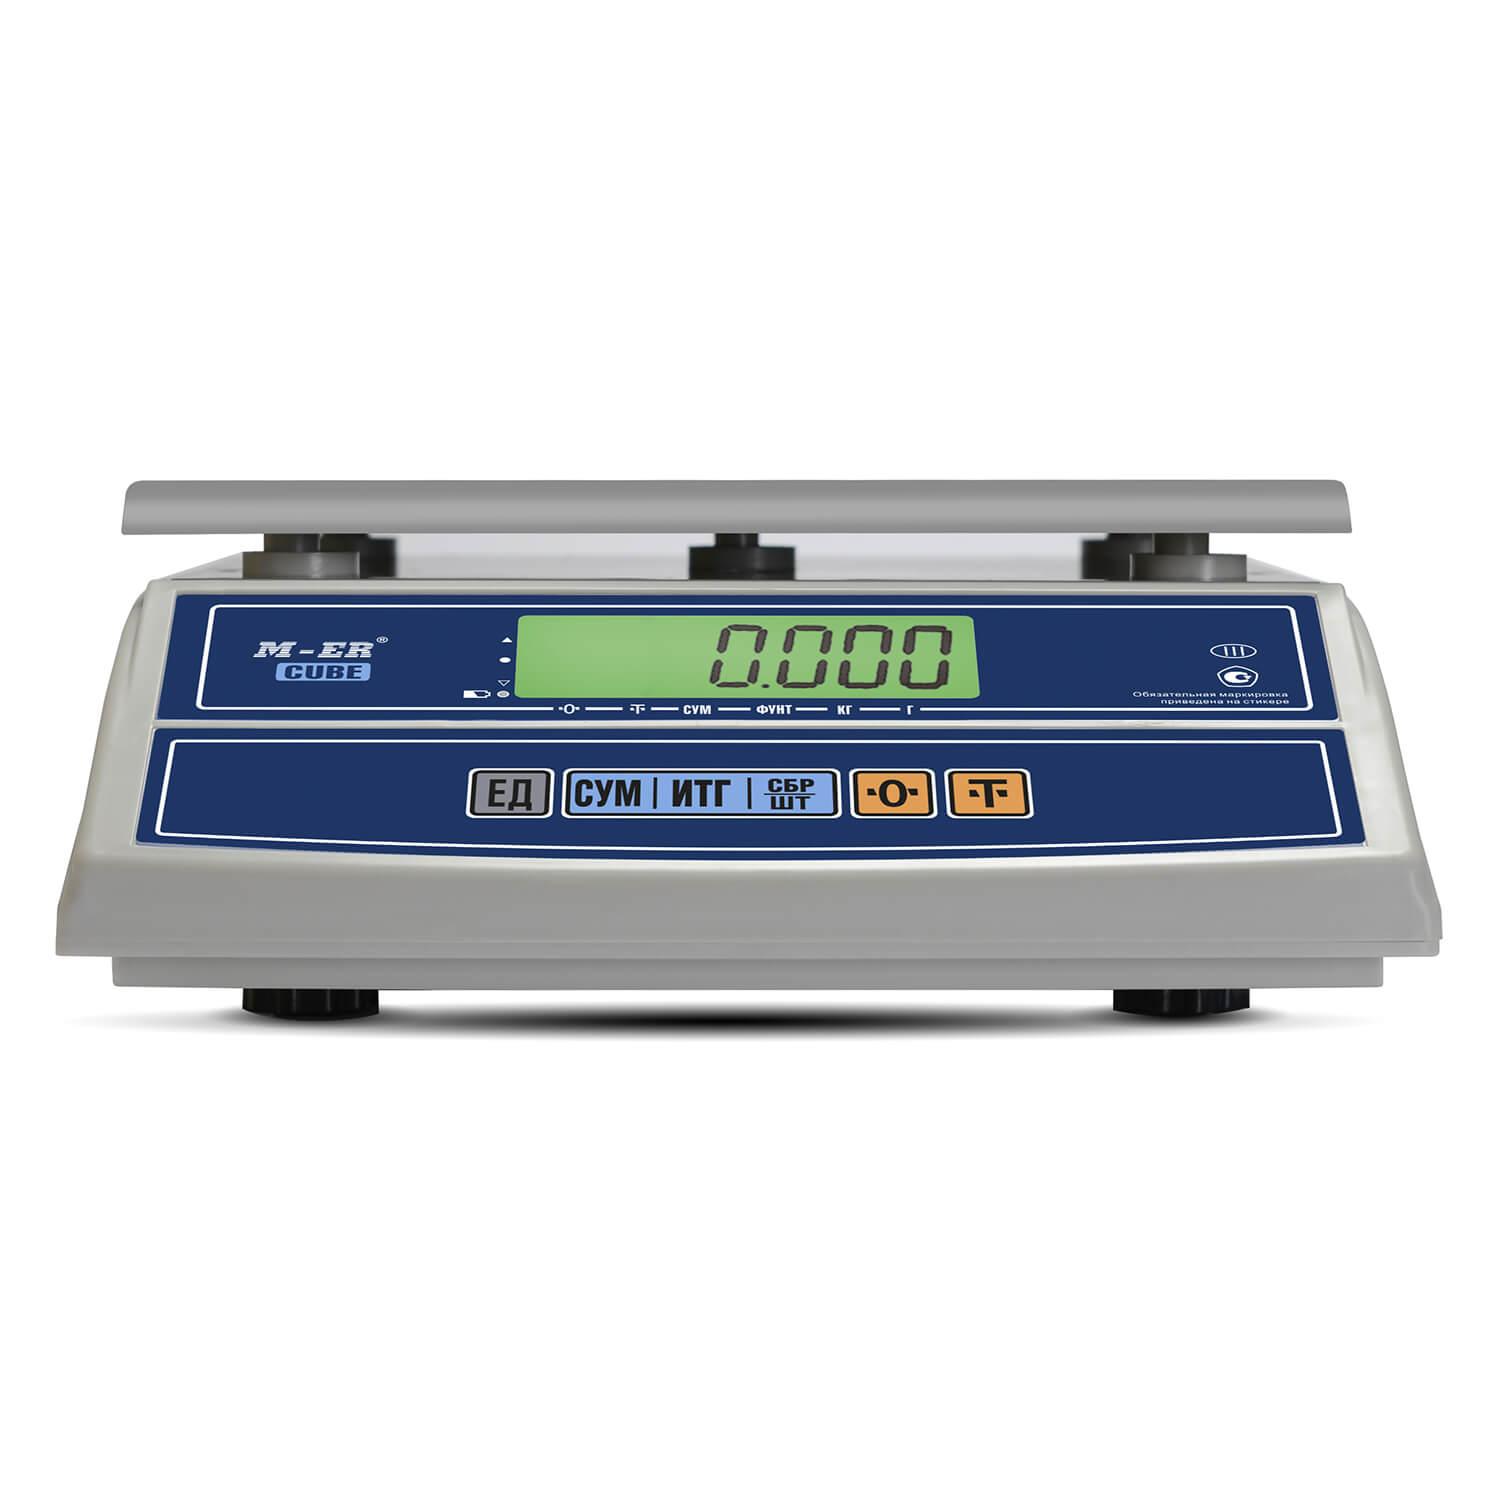 Фасовочные настольные весы M-ER 326 AF-32.5 "Cube" LCD RS232 (3150)